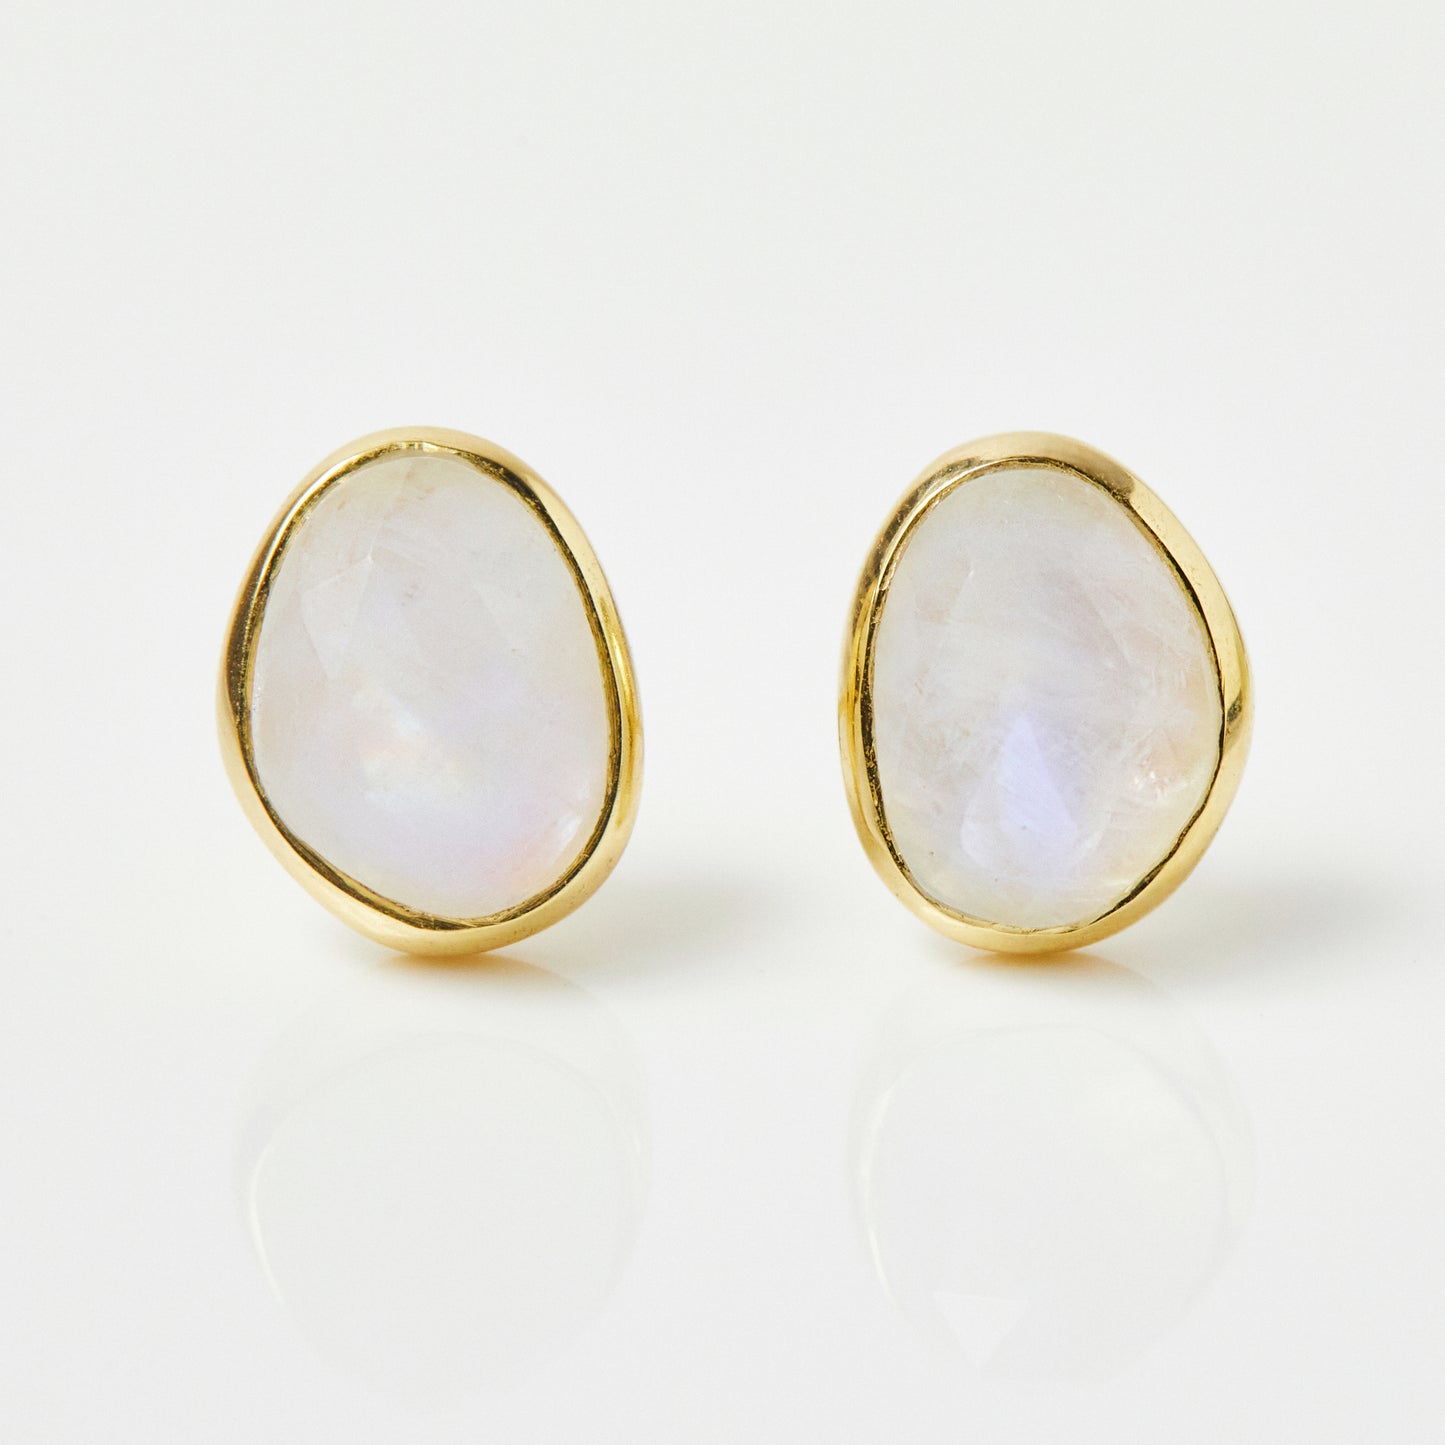 Simple Moonstone Earrings in Gold Vermeil - Earrings - Carrie Elizabeth